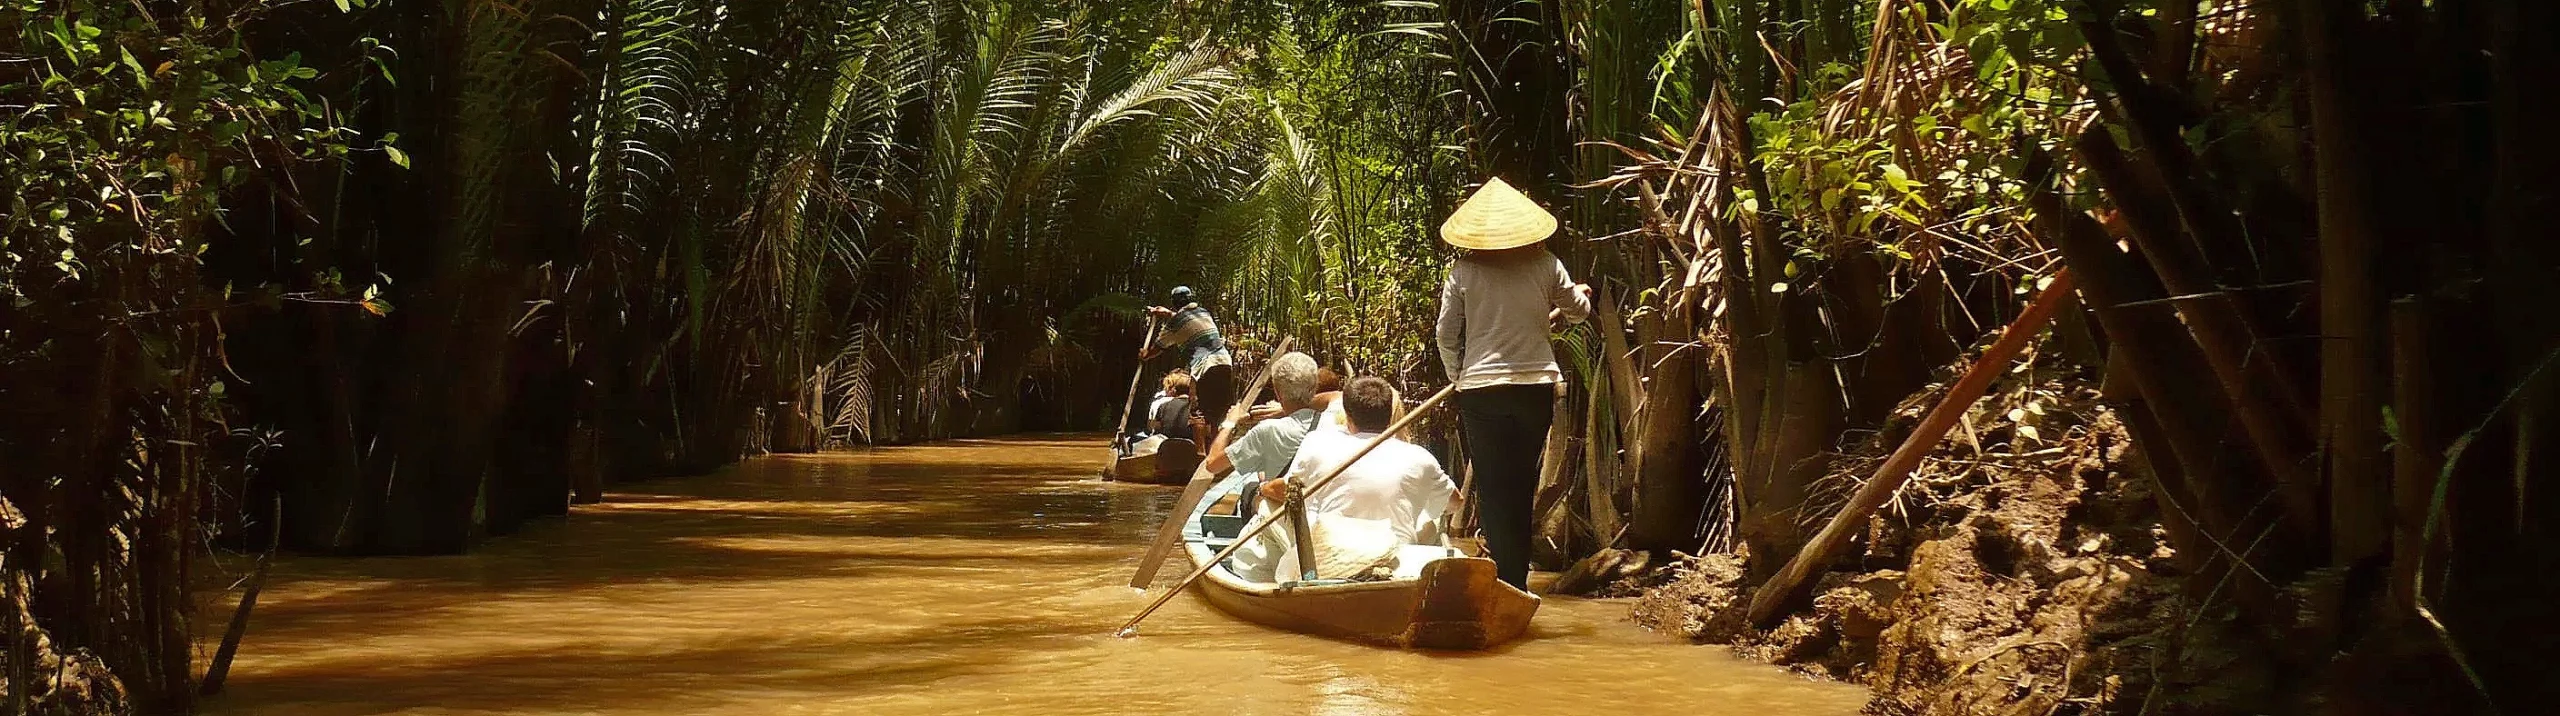 kelionė į Kambodža, egzotinės kelionės, kelionės į Vietnamą ir Kambodžą